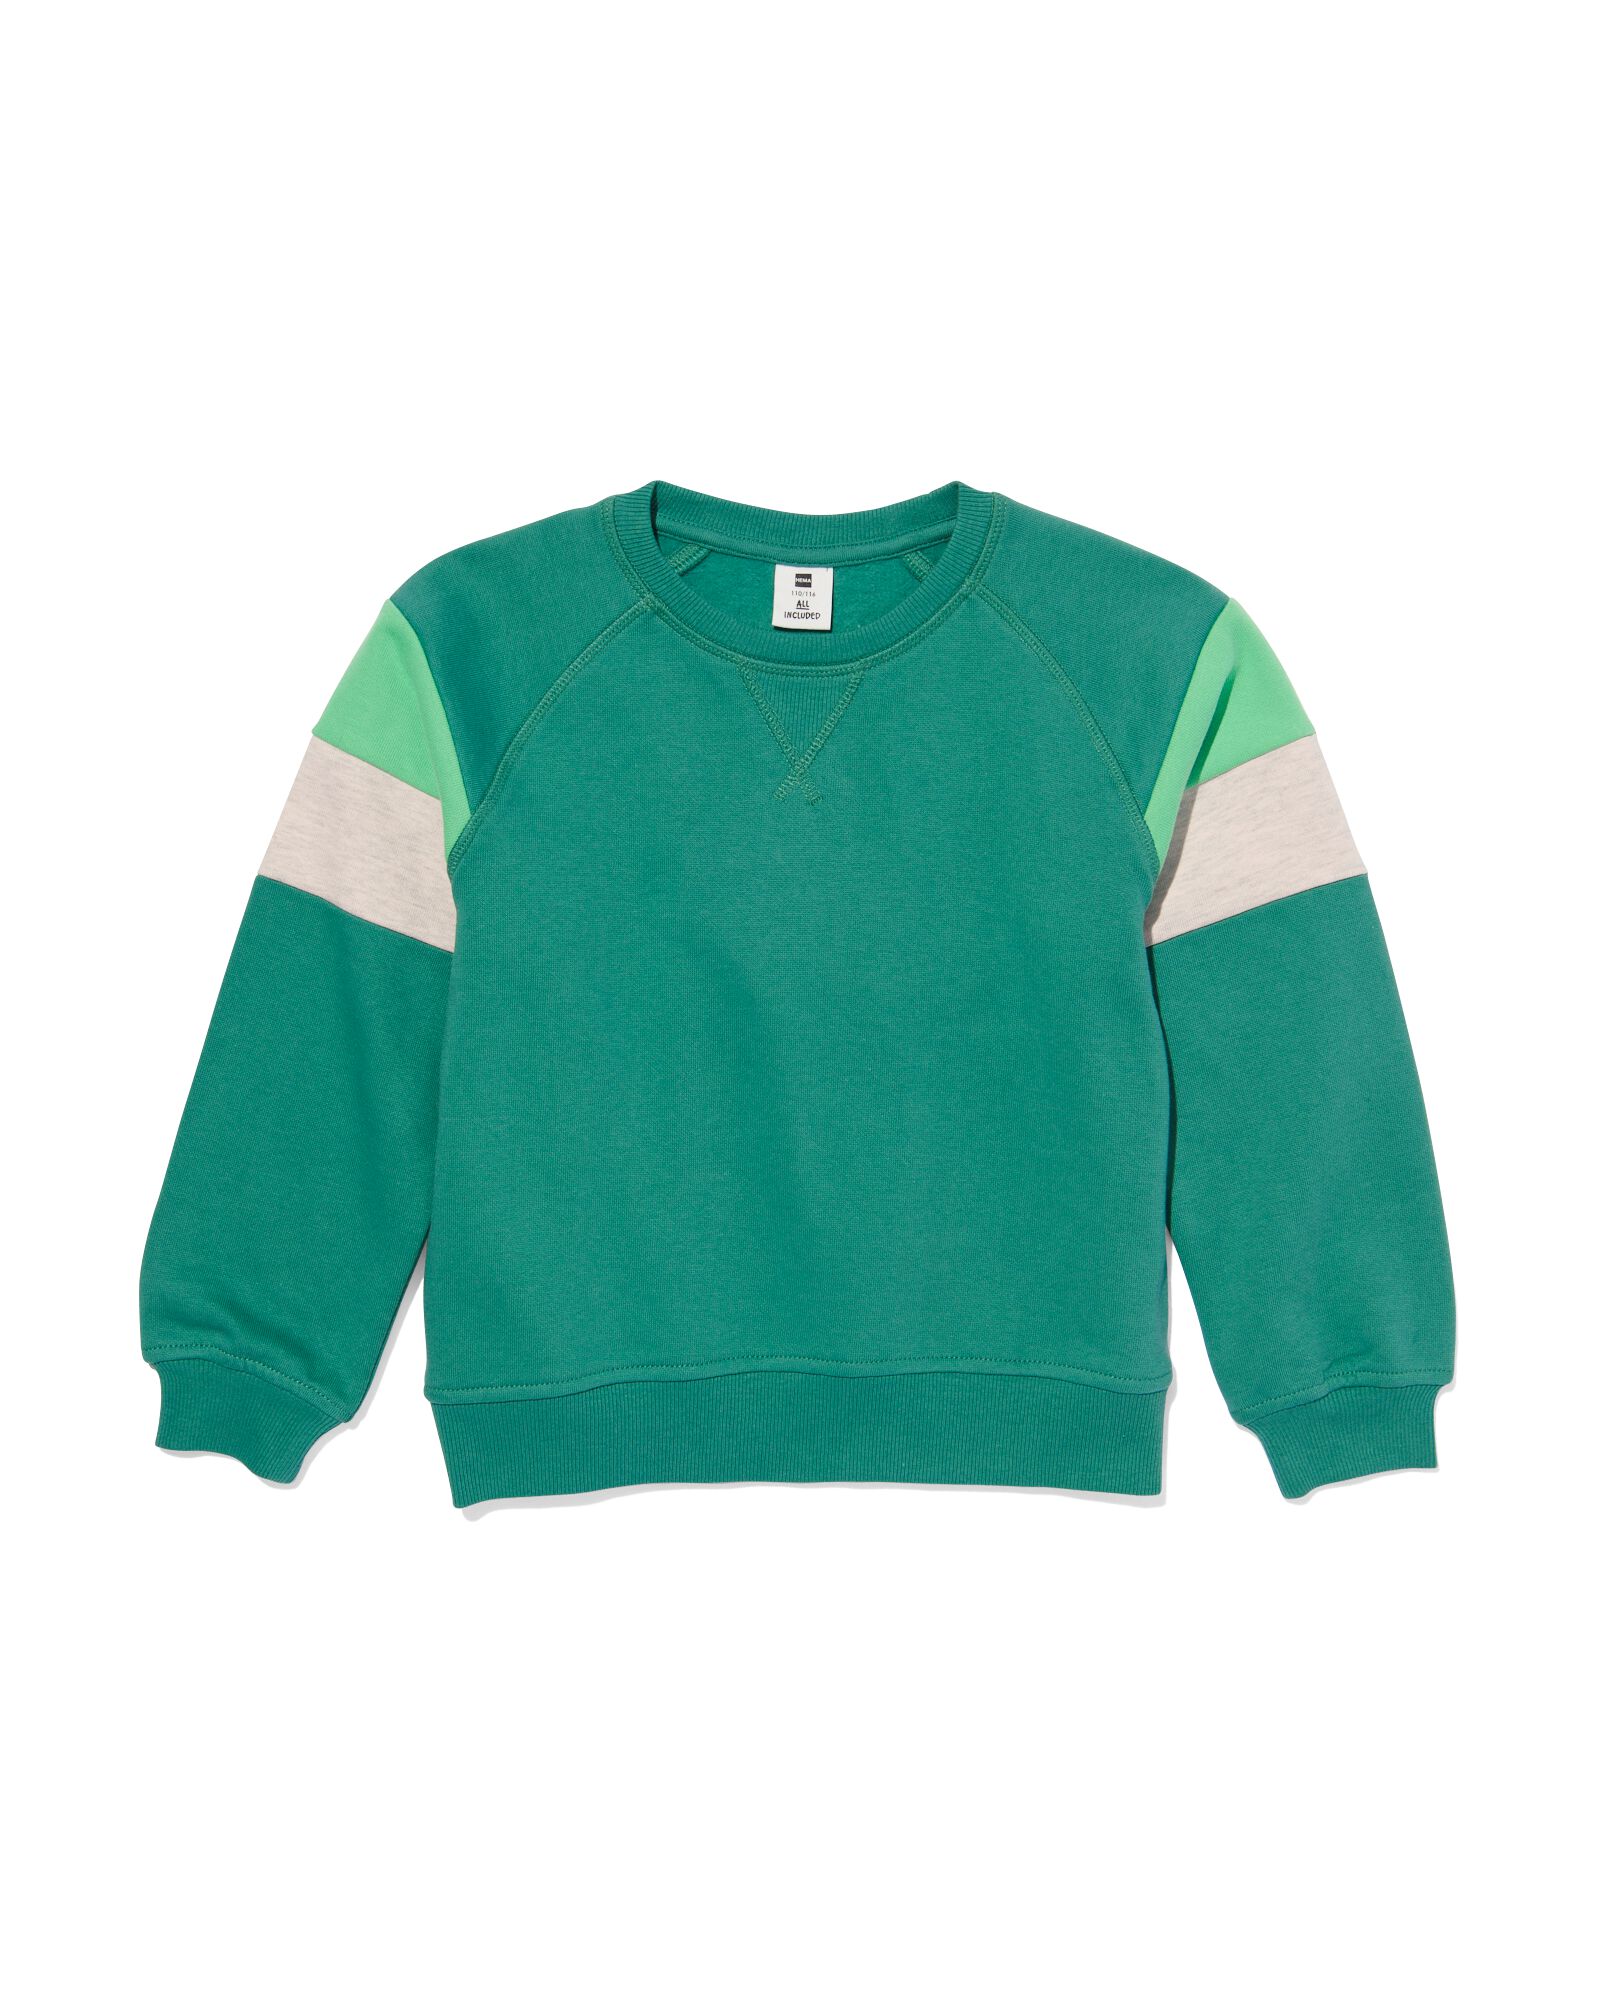 kindersweater met kleurblokken groen groen - 30777503GREEN - HEMA